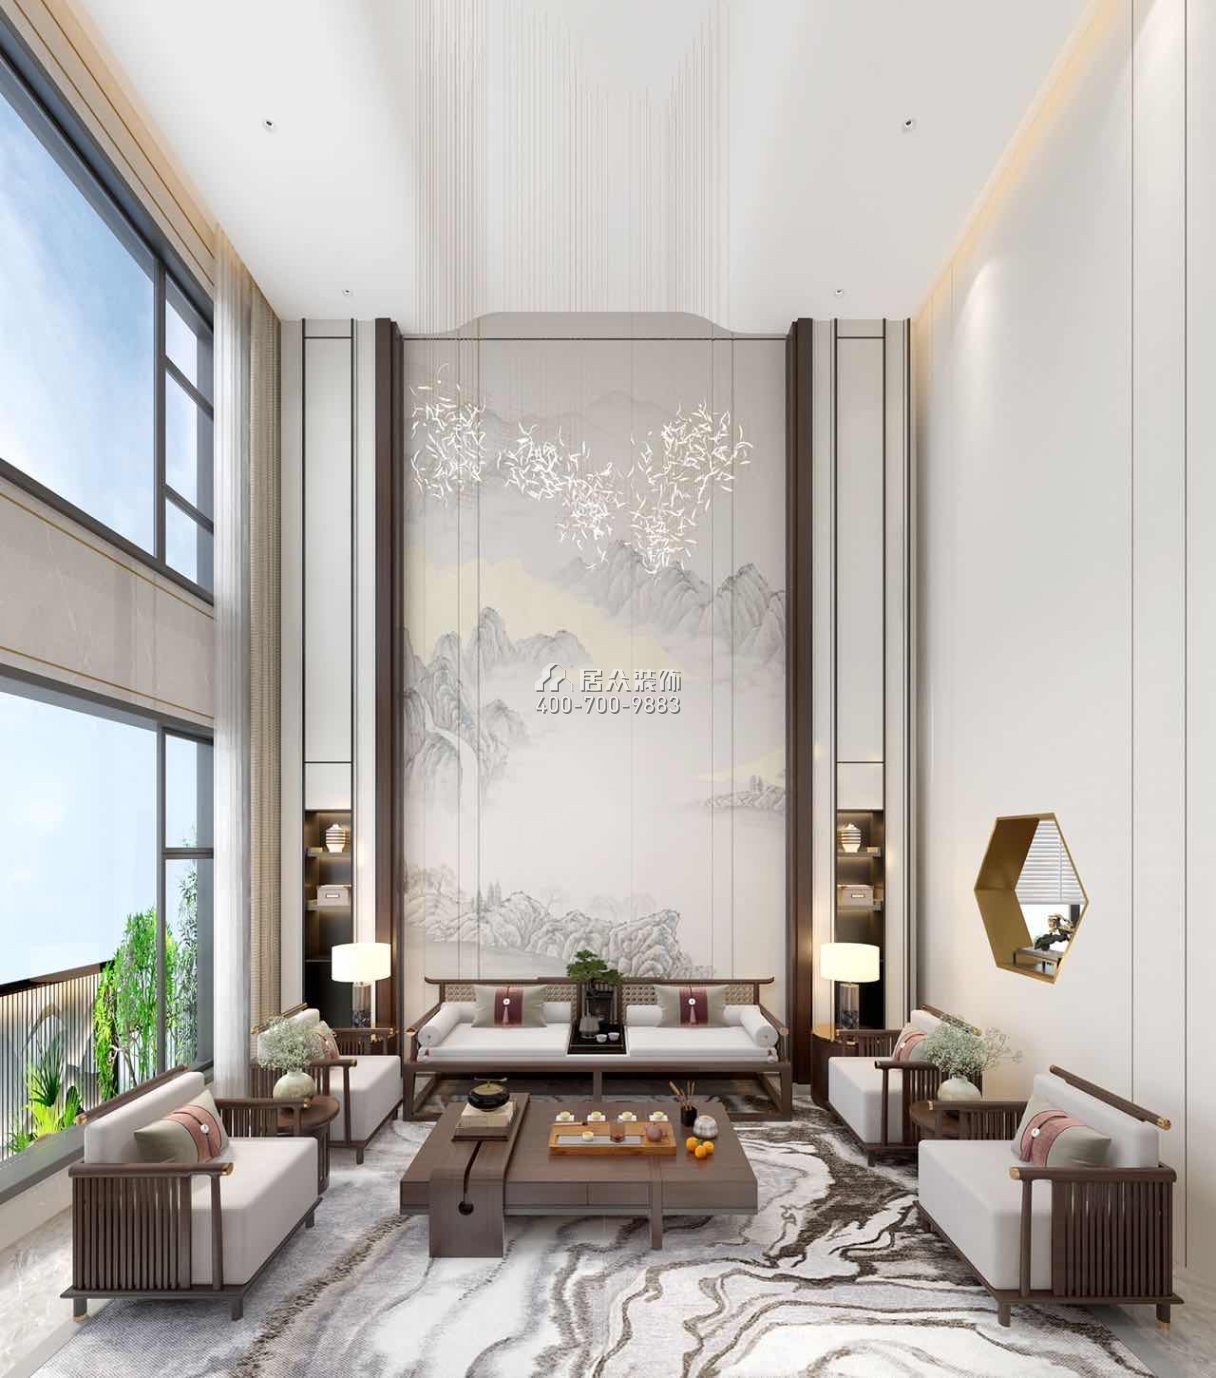 中海汤泉450平方米中式风格别墅户型客厅装修效果图